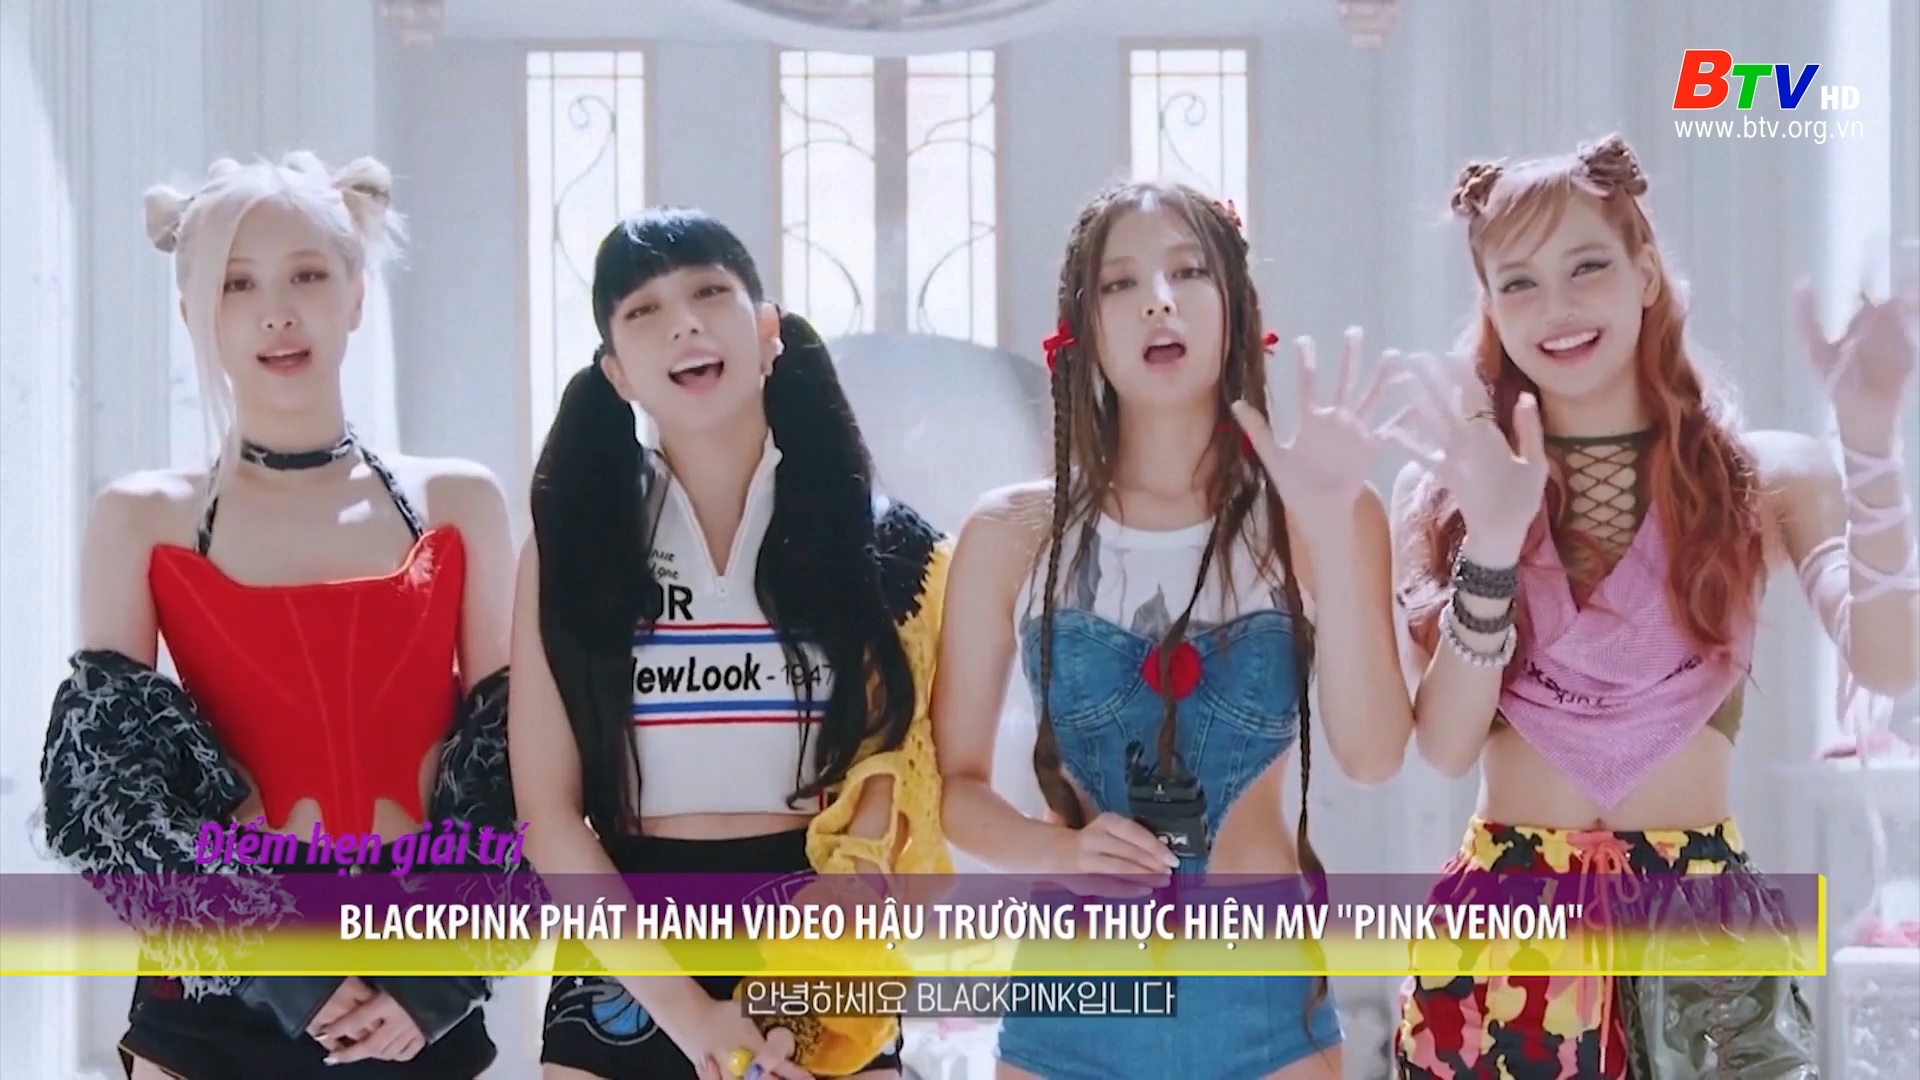 Blackpink phát hành Video hậu trường thực hiện MV “Pink Venom”